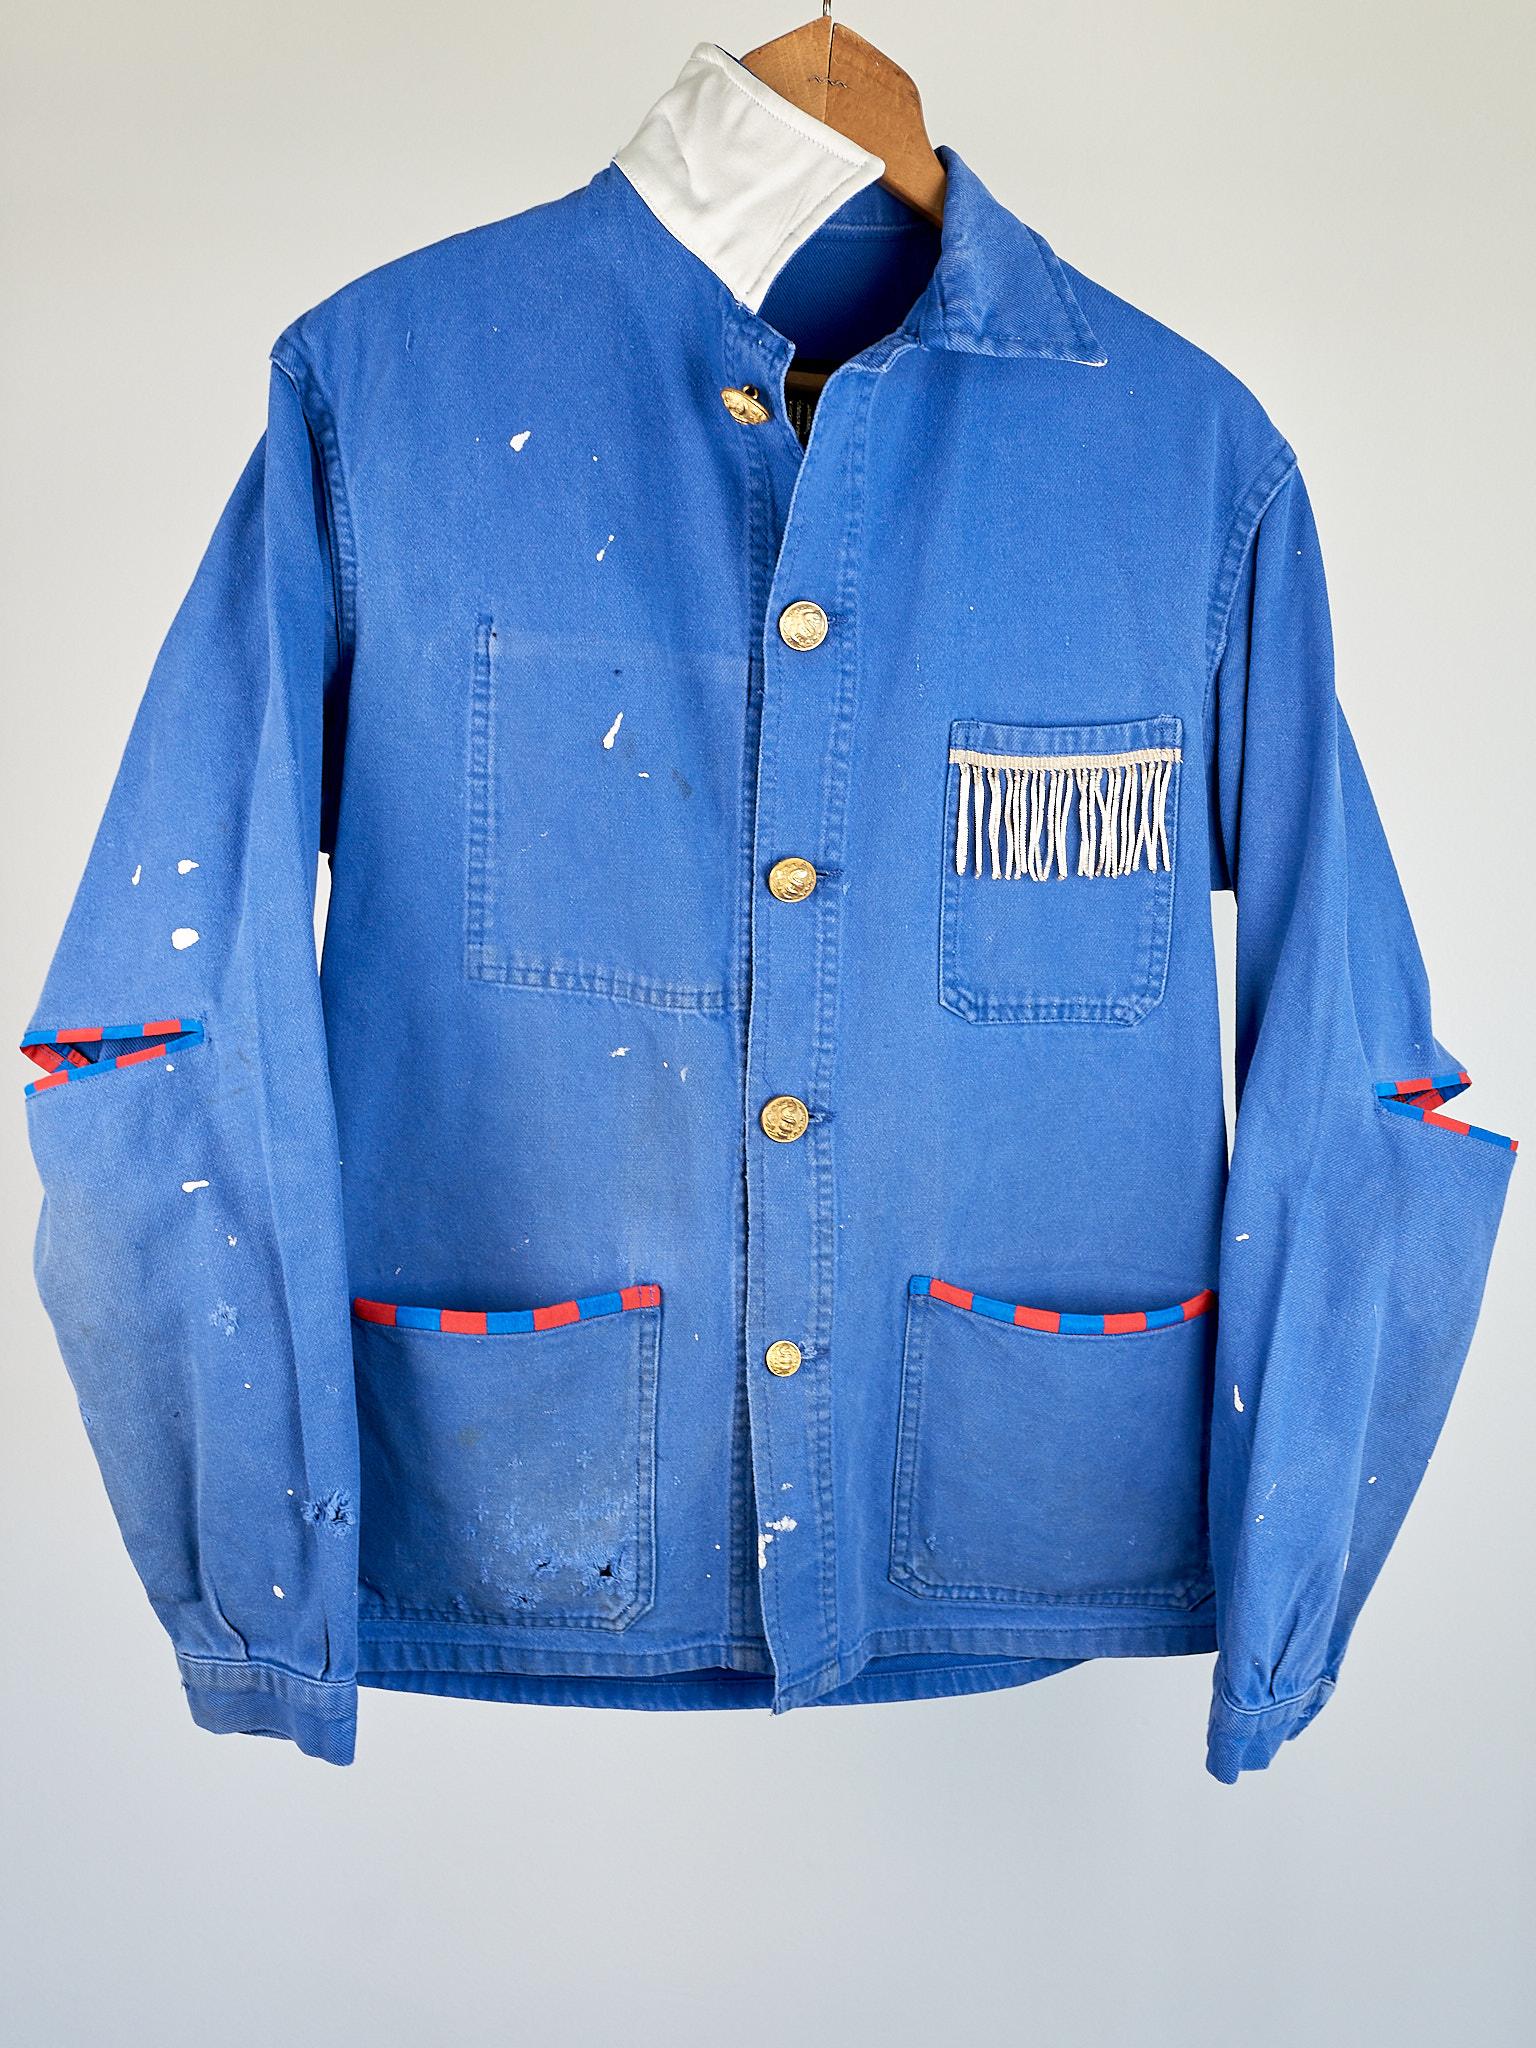 Blue Work Wear Jacket Vintage Silver Bullion Fringes Italian Silk 6